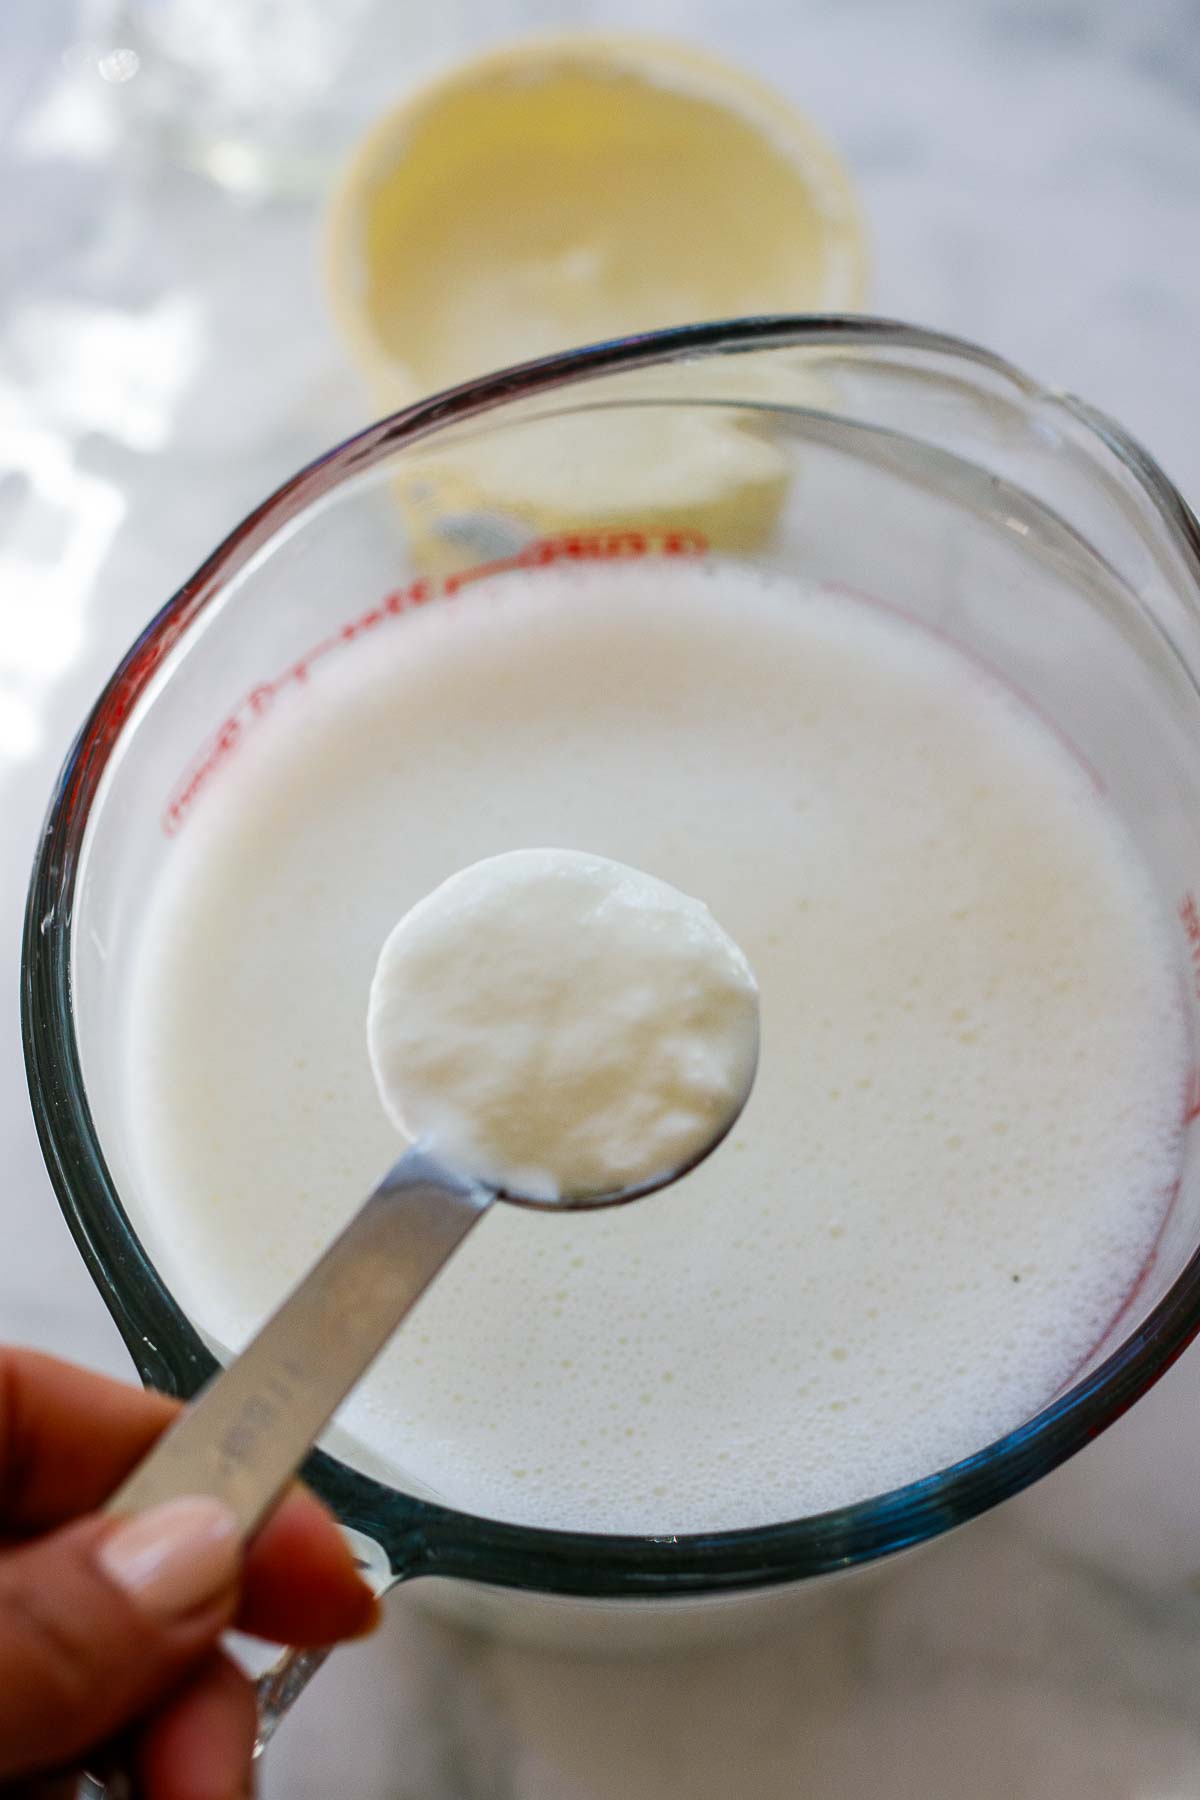 add in one tablespoon yogurt culture. 